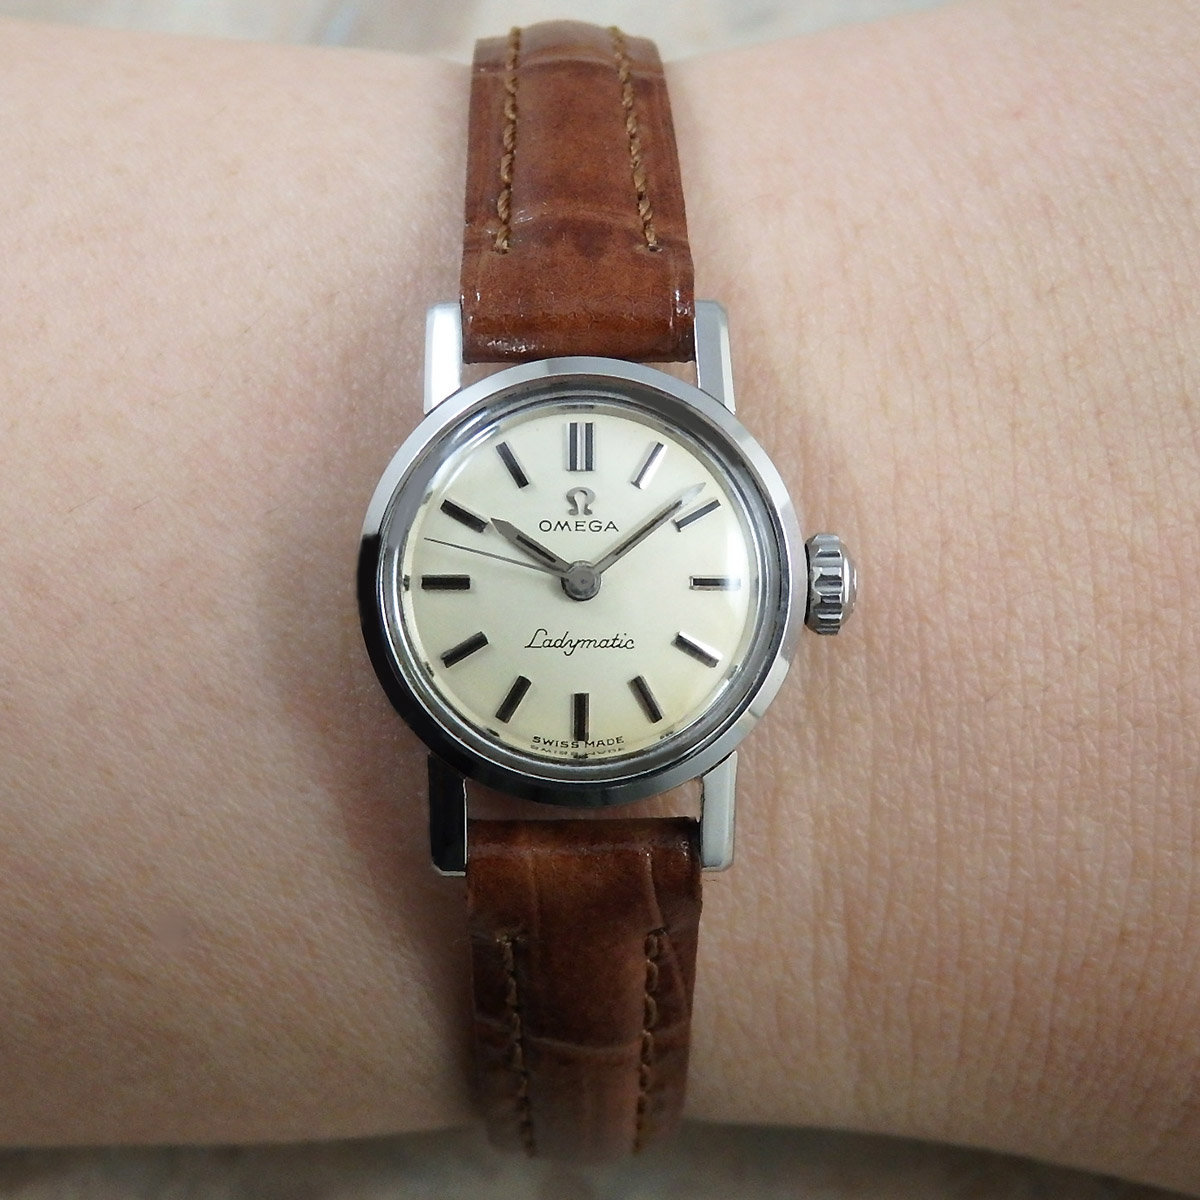 オメガ レディマティック/Lady matic アンティーク時計 1960年 OMEGA腕時計